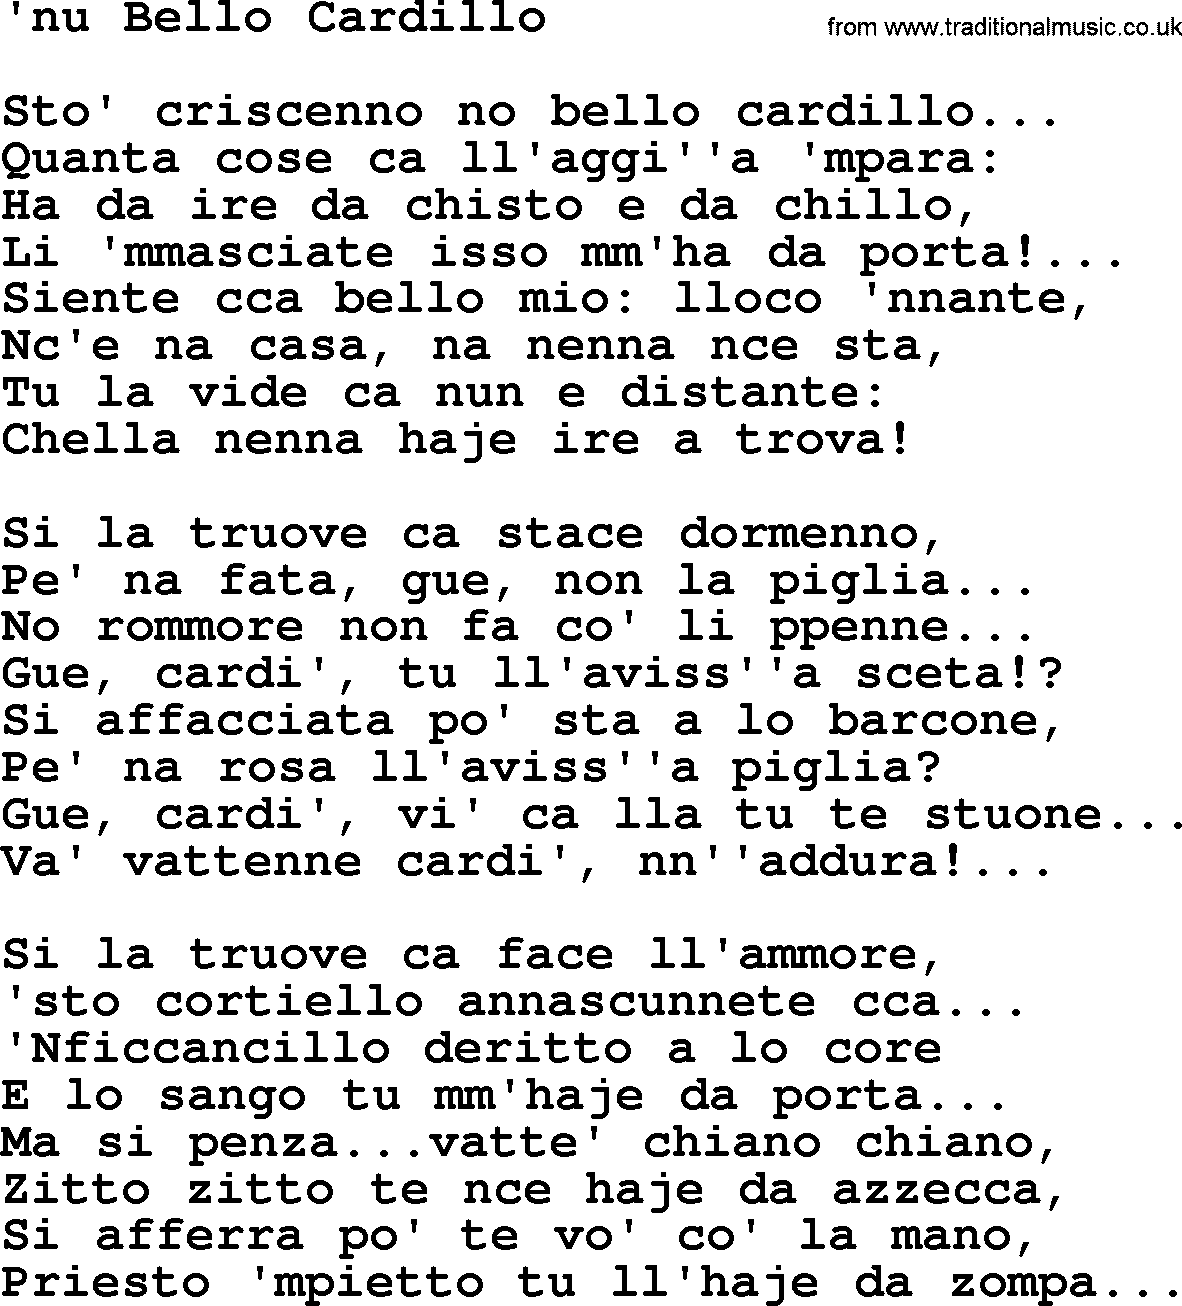 Joan Baez song Nu Bello Cardillo, lyrics